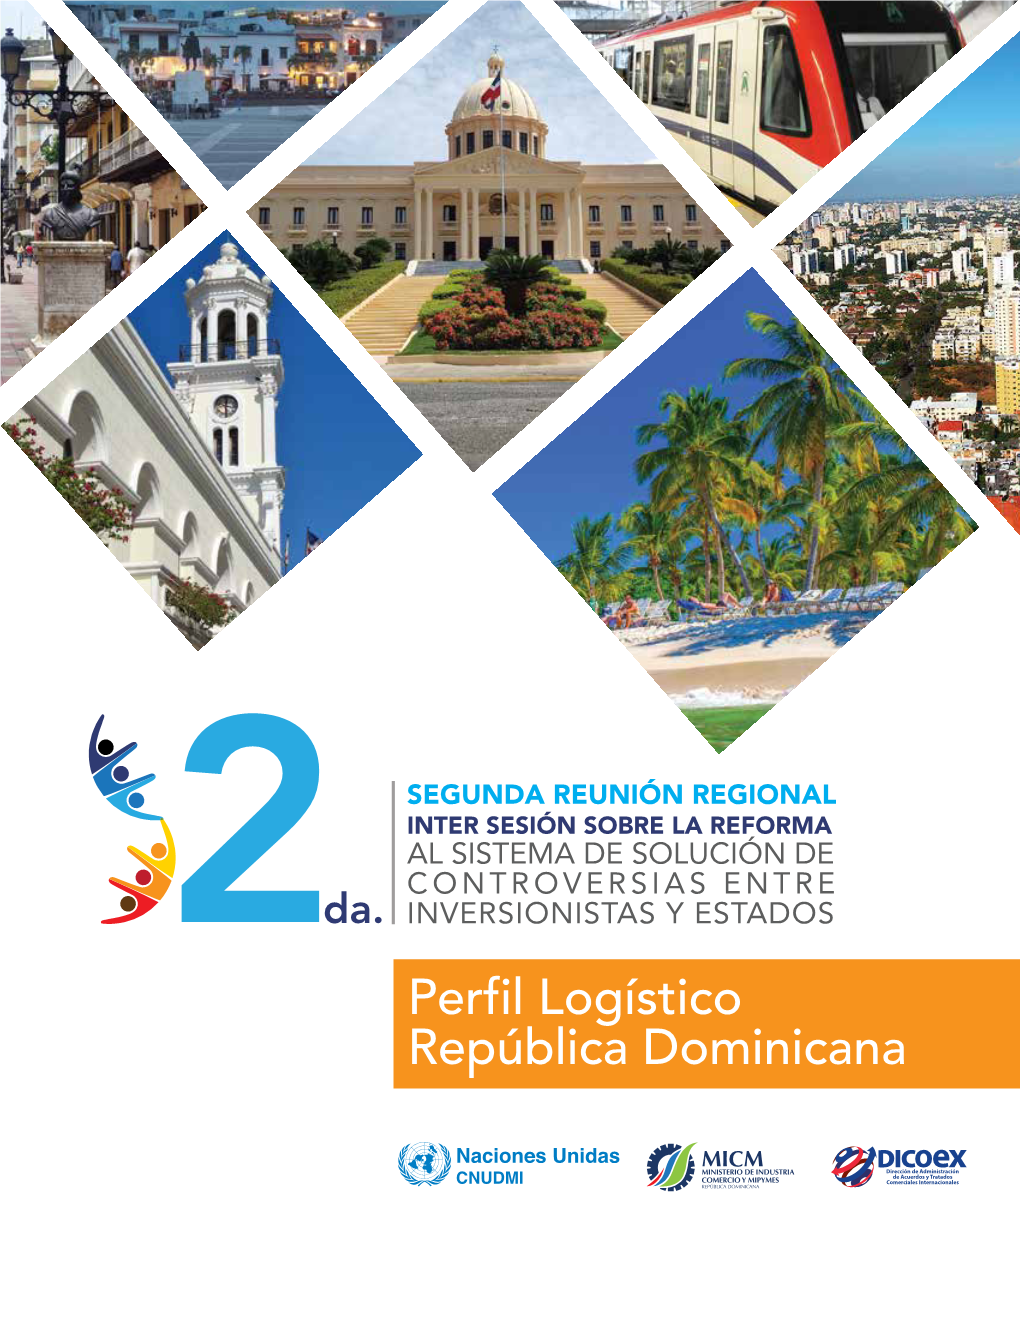 Perfil Logístico República Dominicana